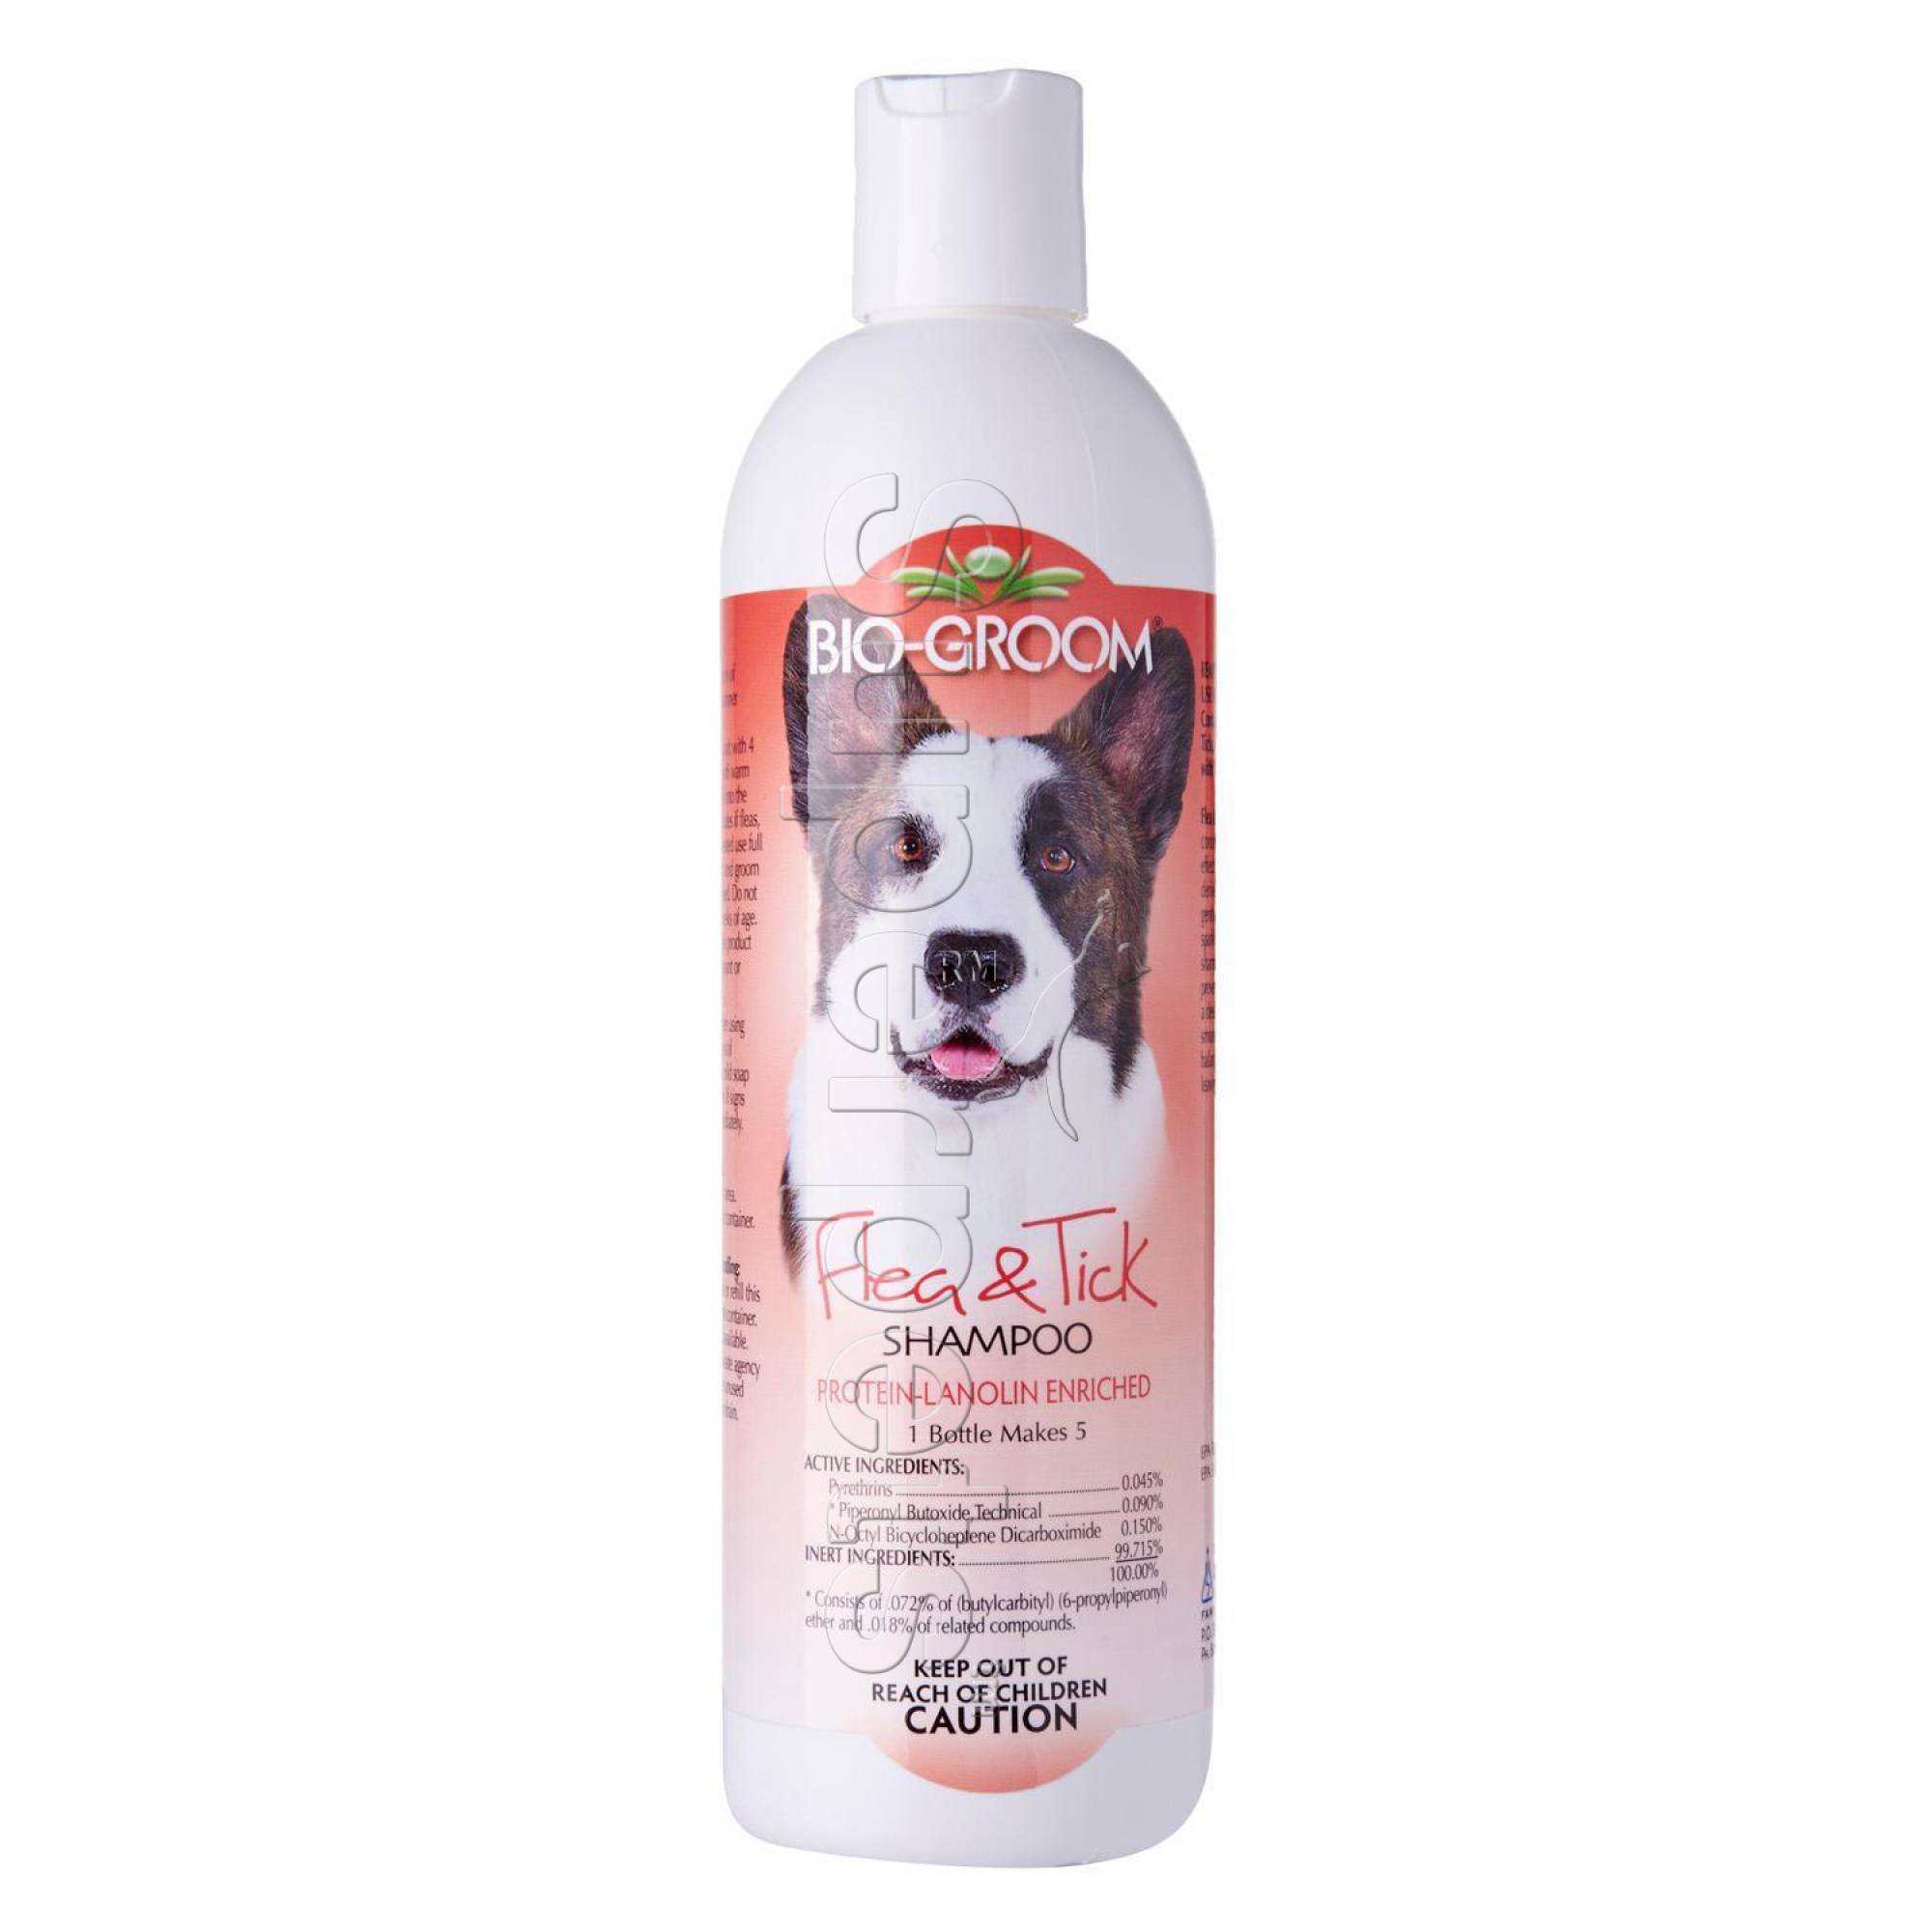 Bio-Groom Flea & Tick Shampoo 12oz (355ml)